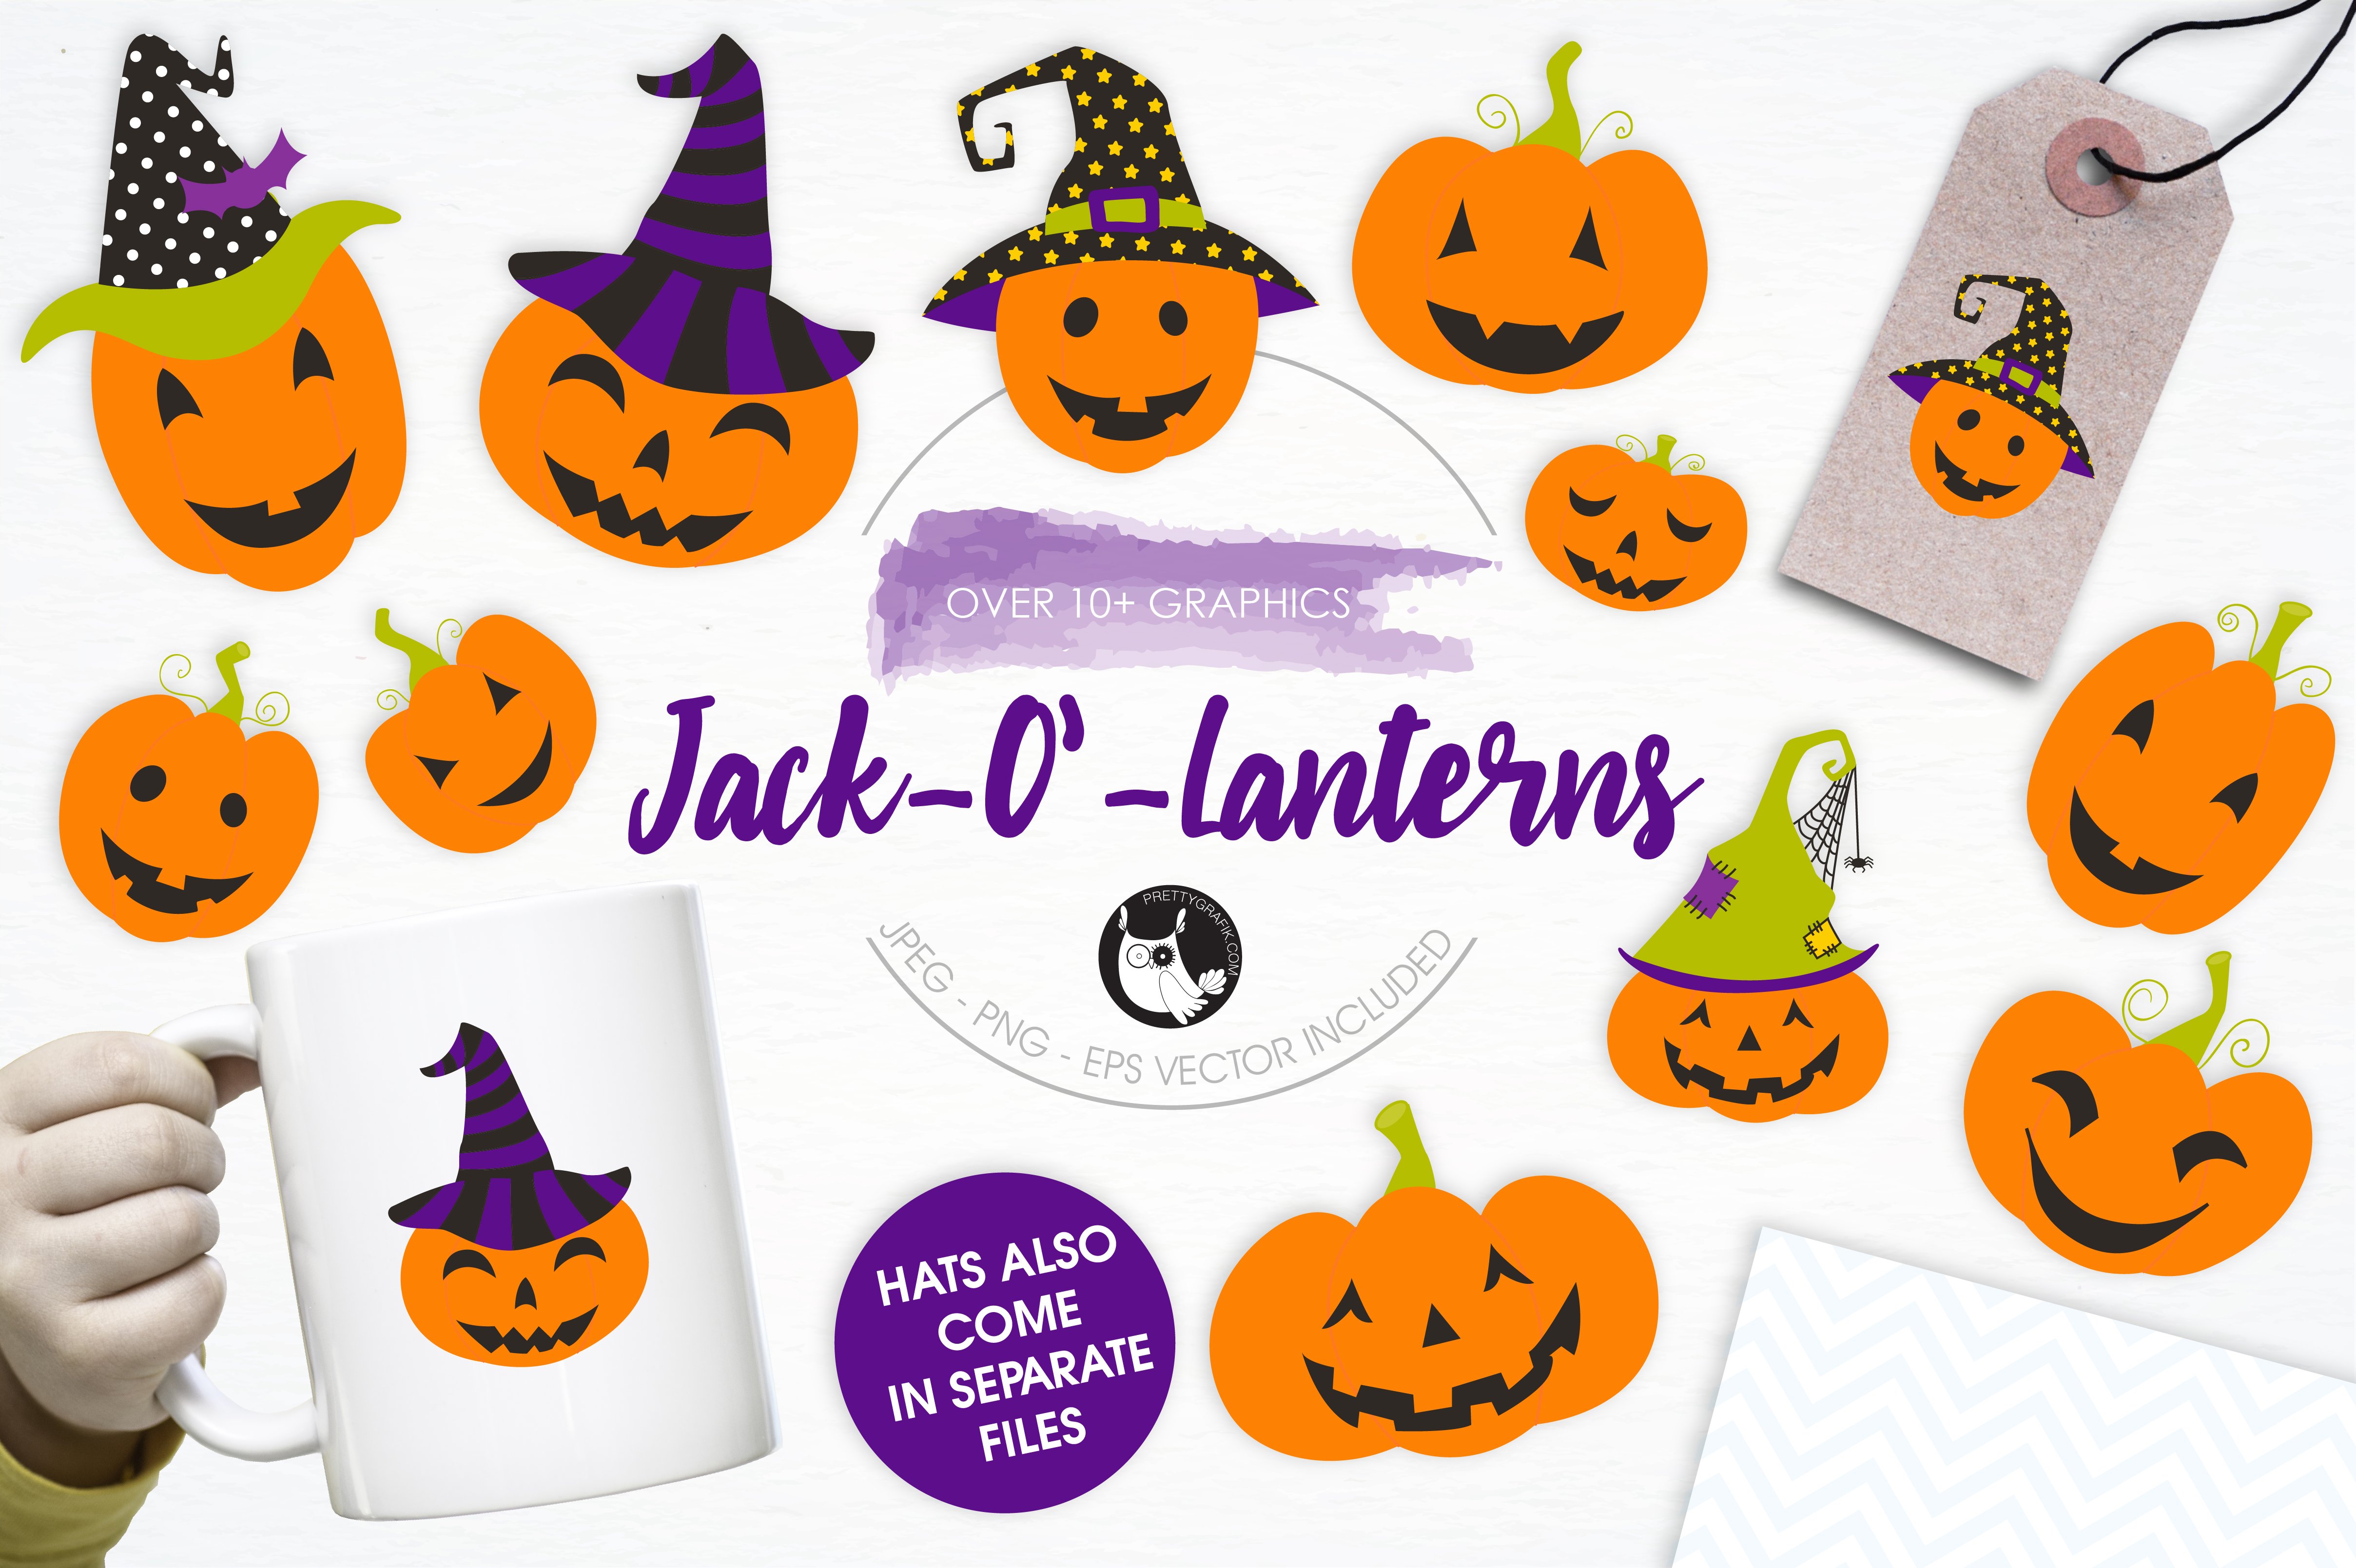 Jack O' Lanterns illustration pack - Vector Image